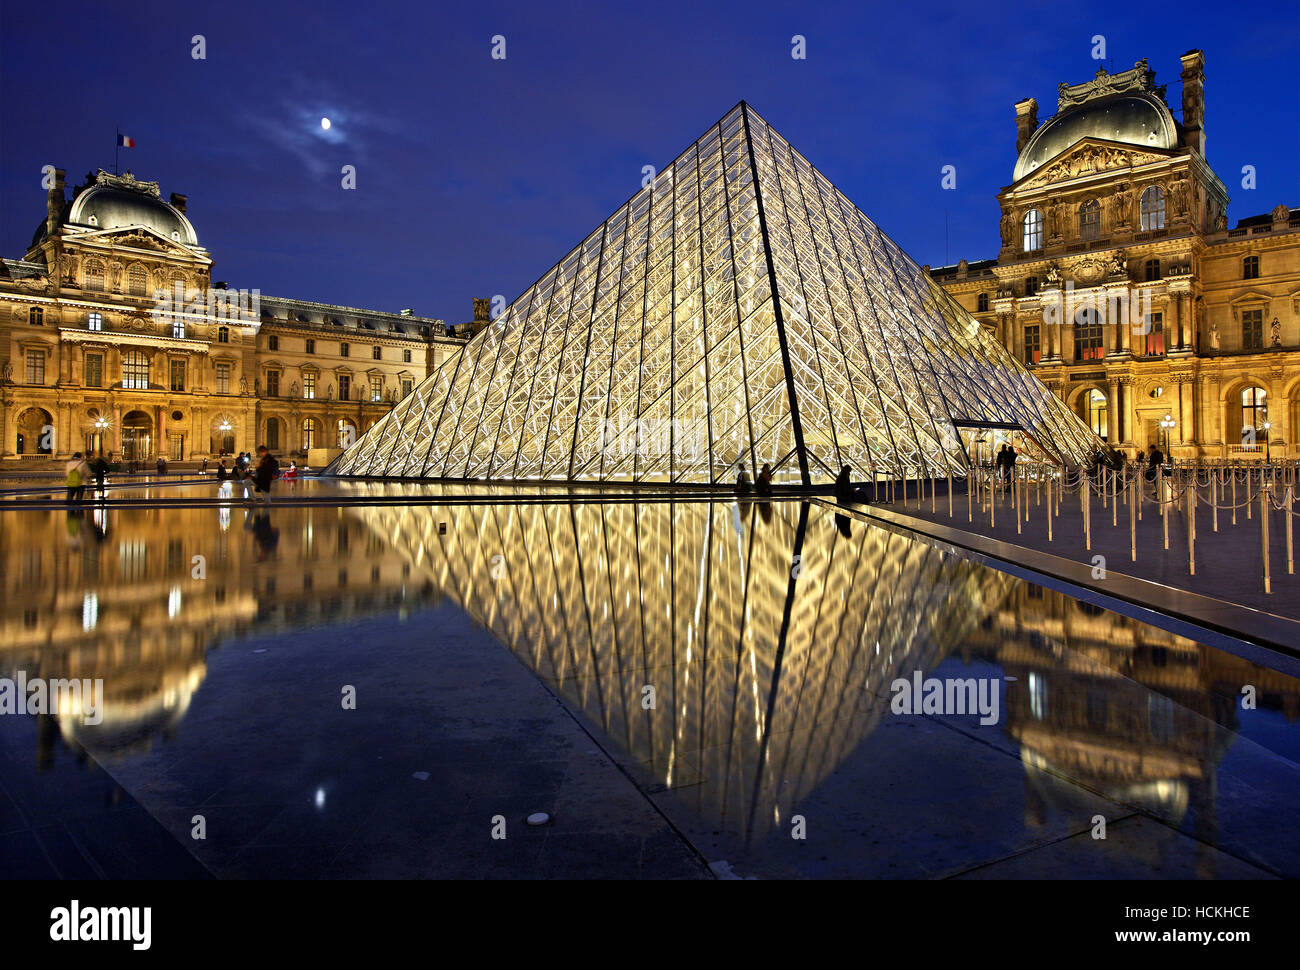 Die Glaspyramide (Architekt: I.M. Pei) des Louvre-Museum (Musée du Louvre), Paris, Frankreich. Stockfoto